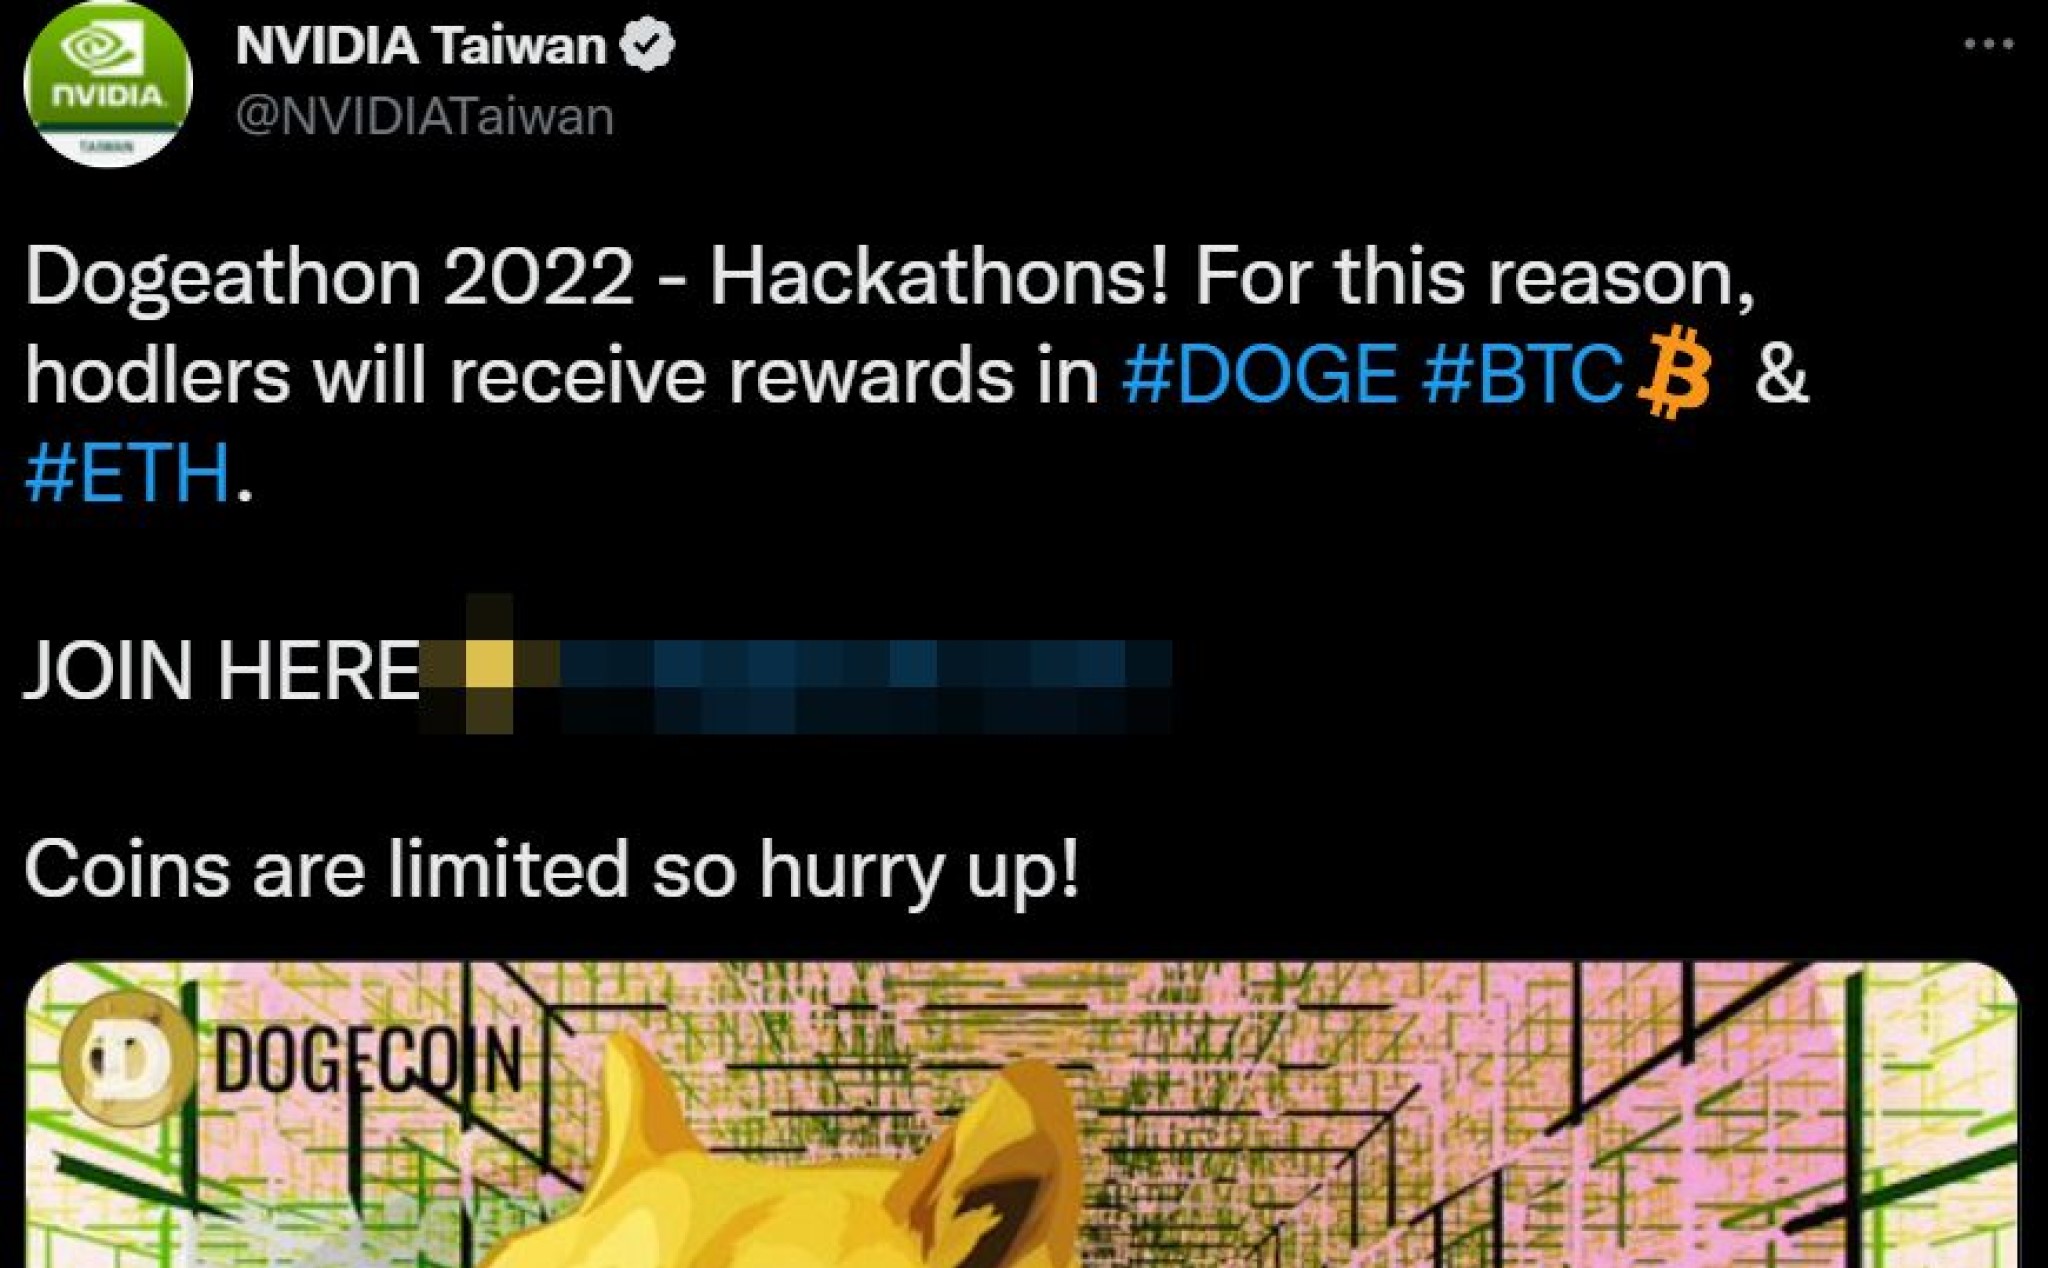 Tài khoản Twitter của NVIDIA Taiwan bị hack để quảng cáo Dogecoin